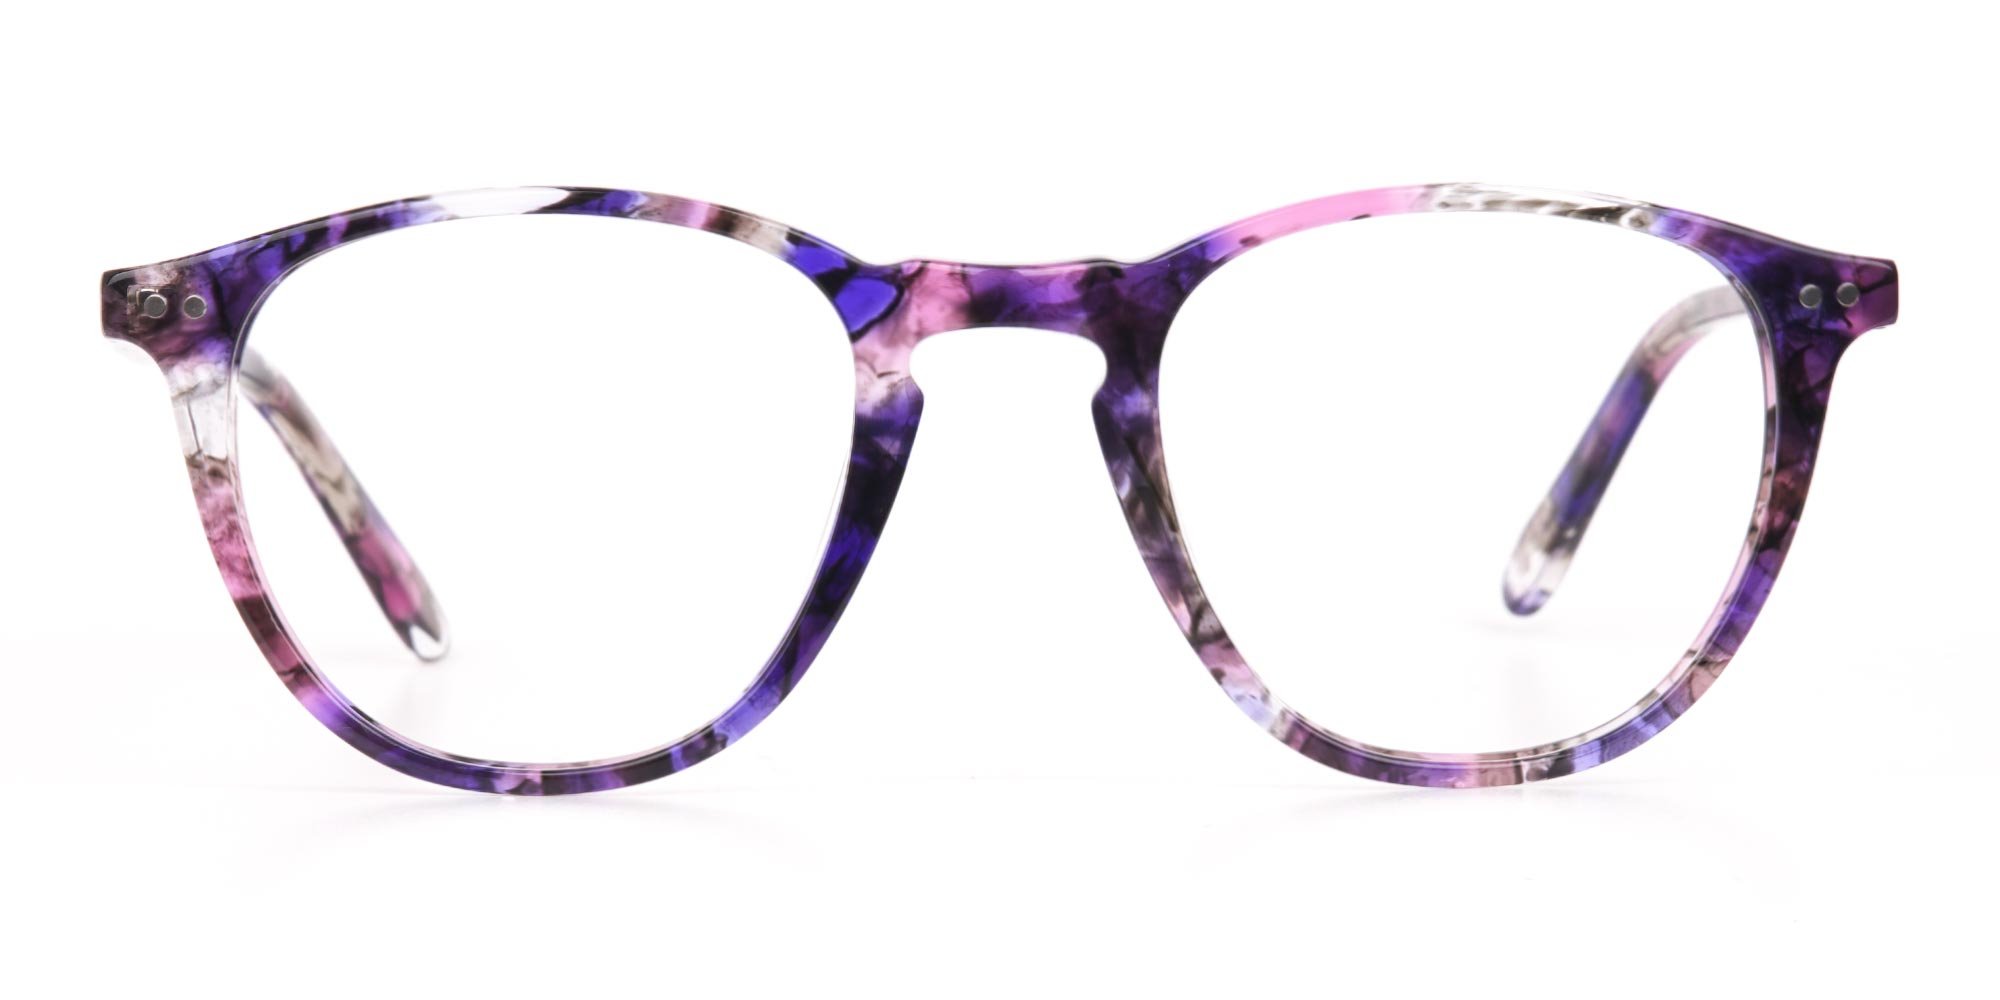 ORSLOW glasses for girls